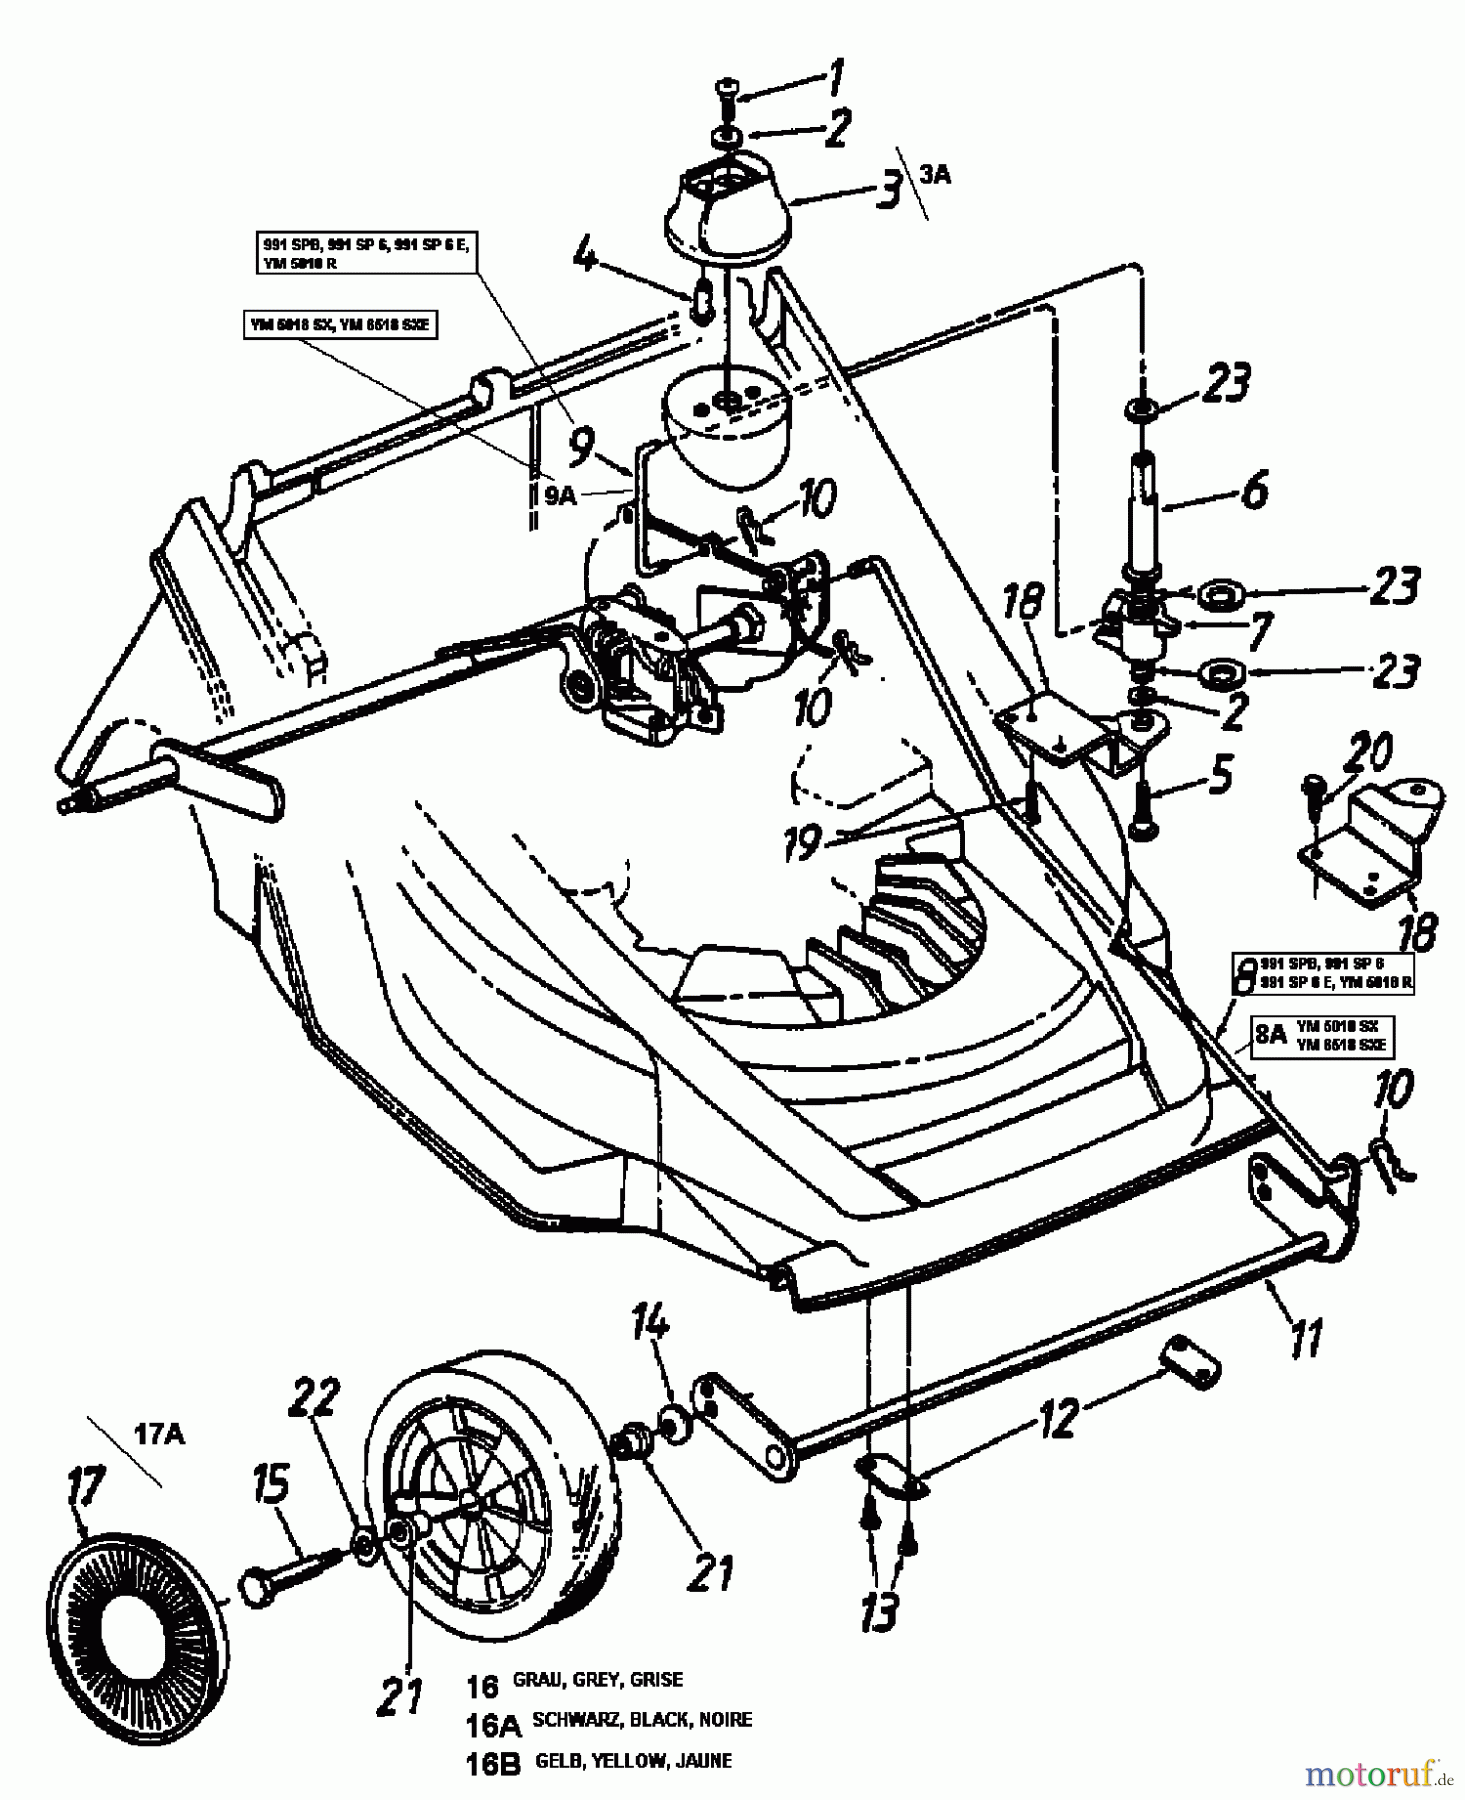  Lawnflite Motormäher mit Antrieb 991 SP 6 12B-658C611  (1999) Räder vorne, Schnitthöhenverstellung